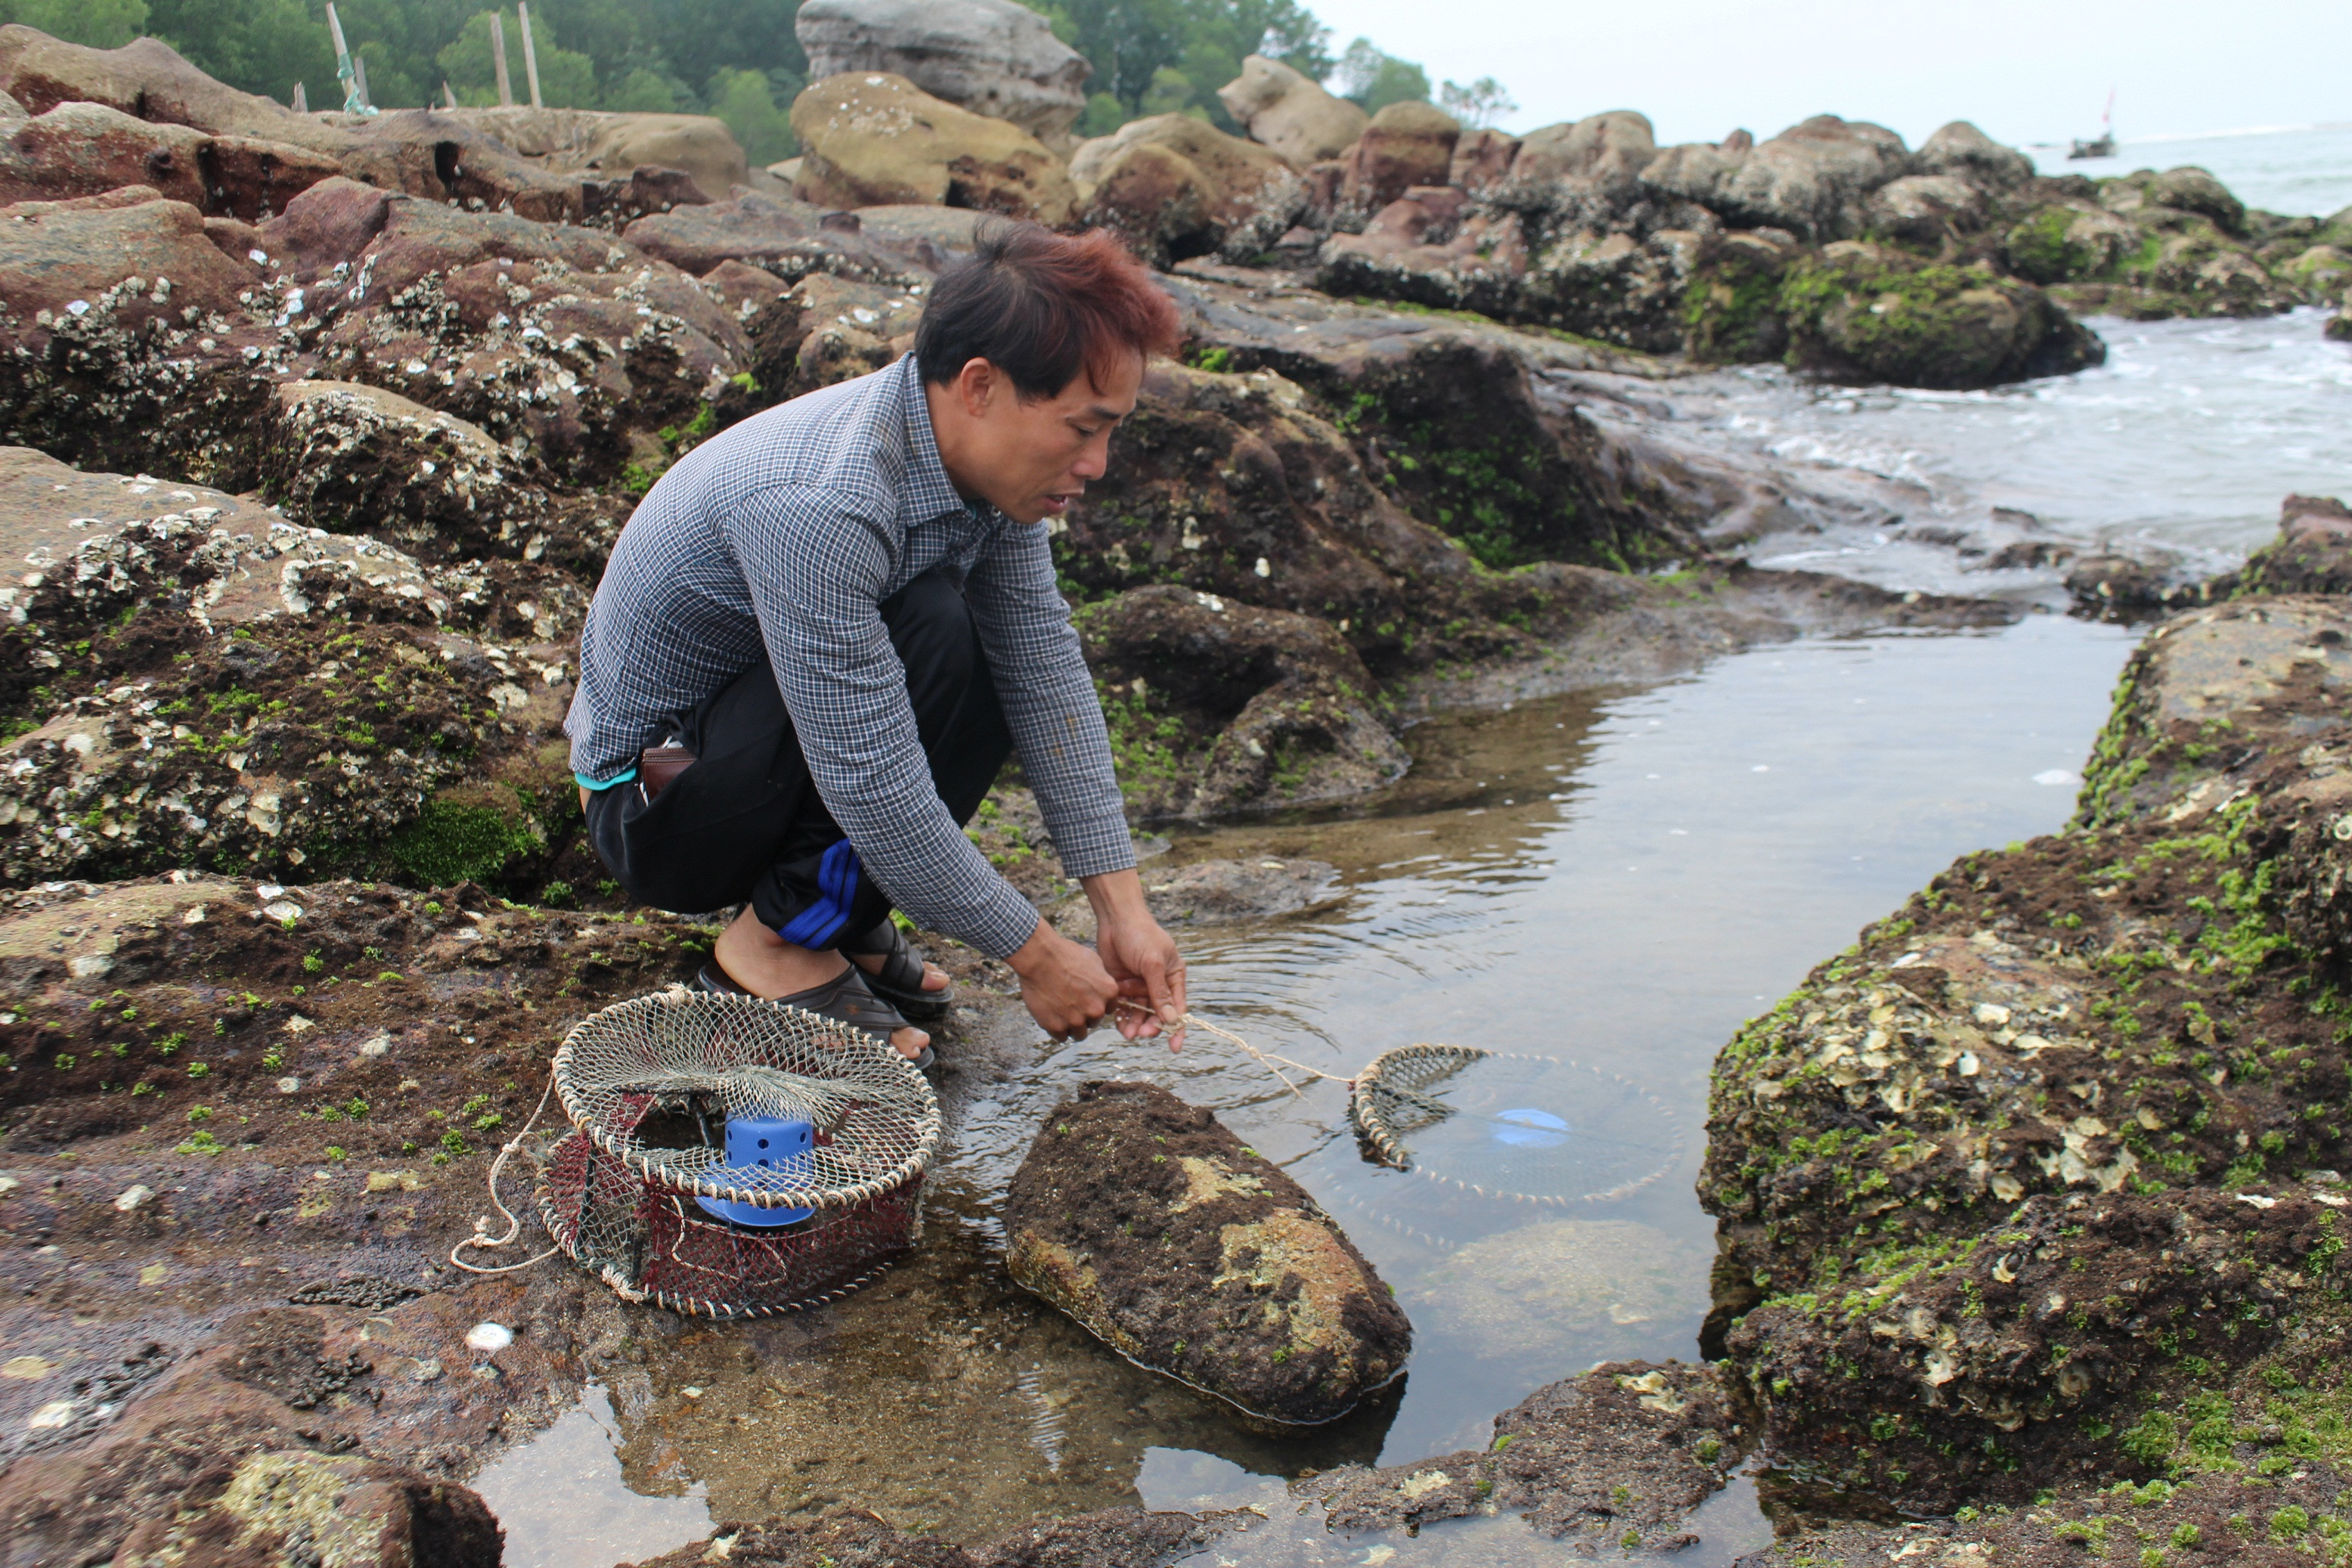  Để săn cua biển, ngư dân Trần Xuân Âu ở xã Quỳnh Lập (thị xã Hoàng Mai) sử dụng bẫy « bóng cua » thả vào các hang đá. Ảnh: Việt Hùng